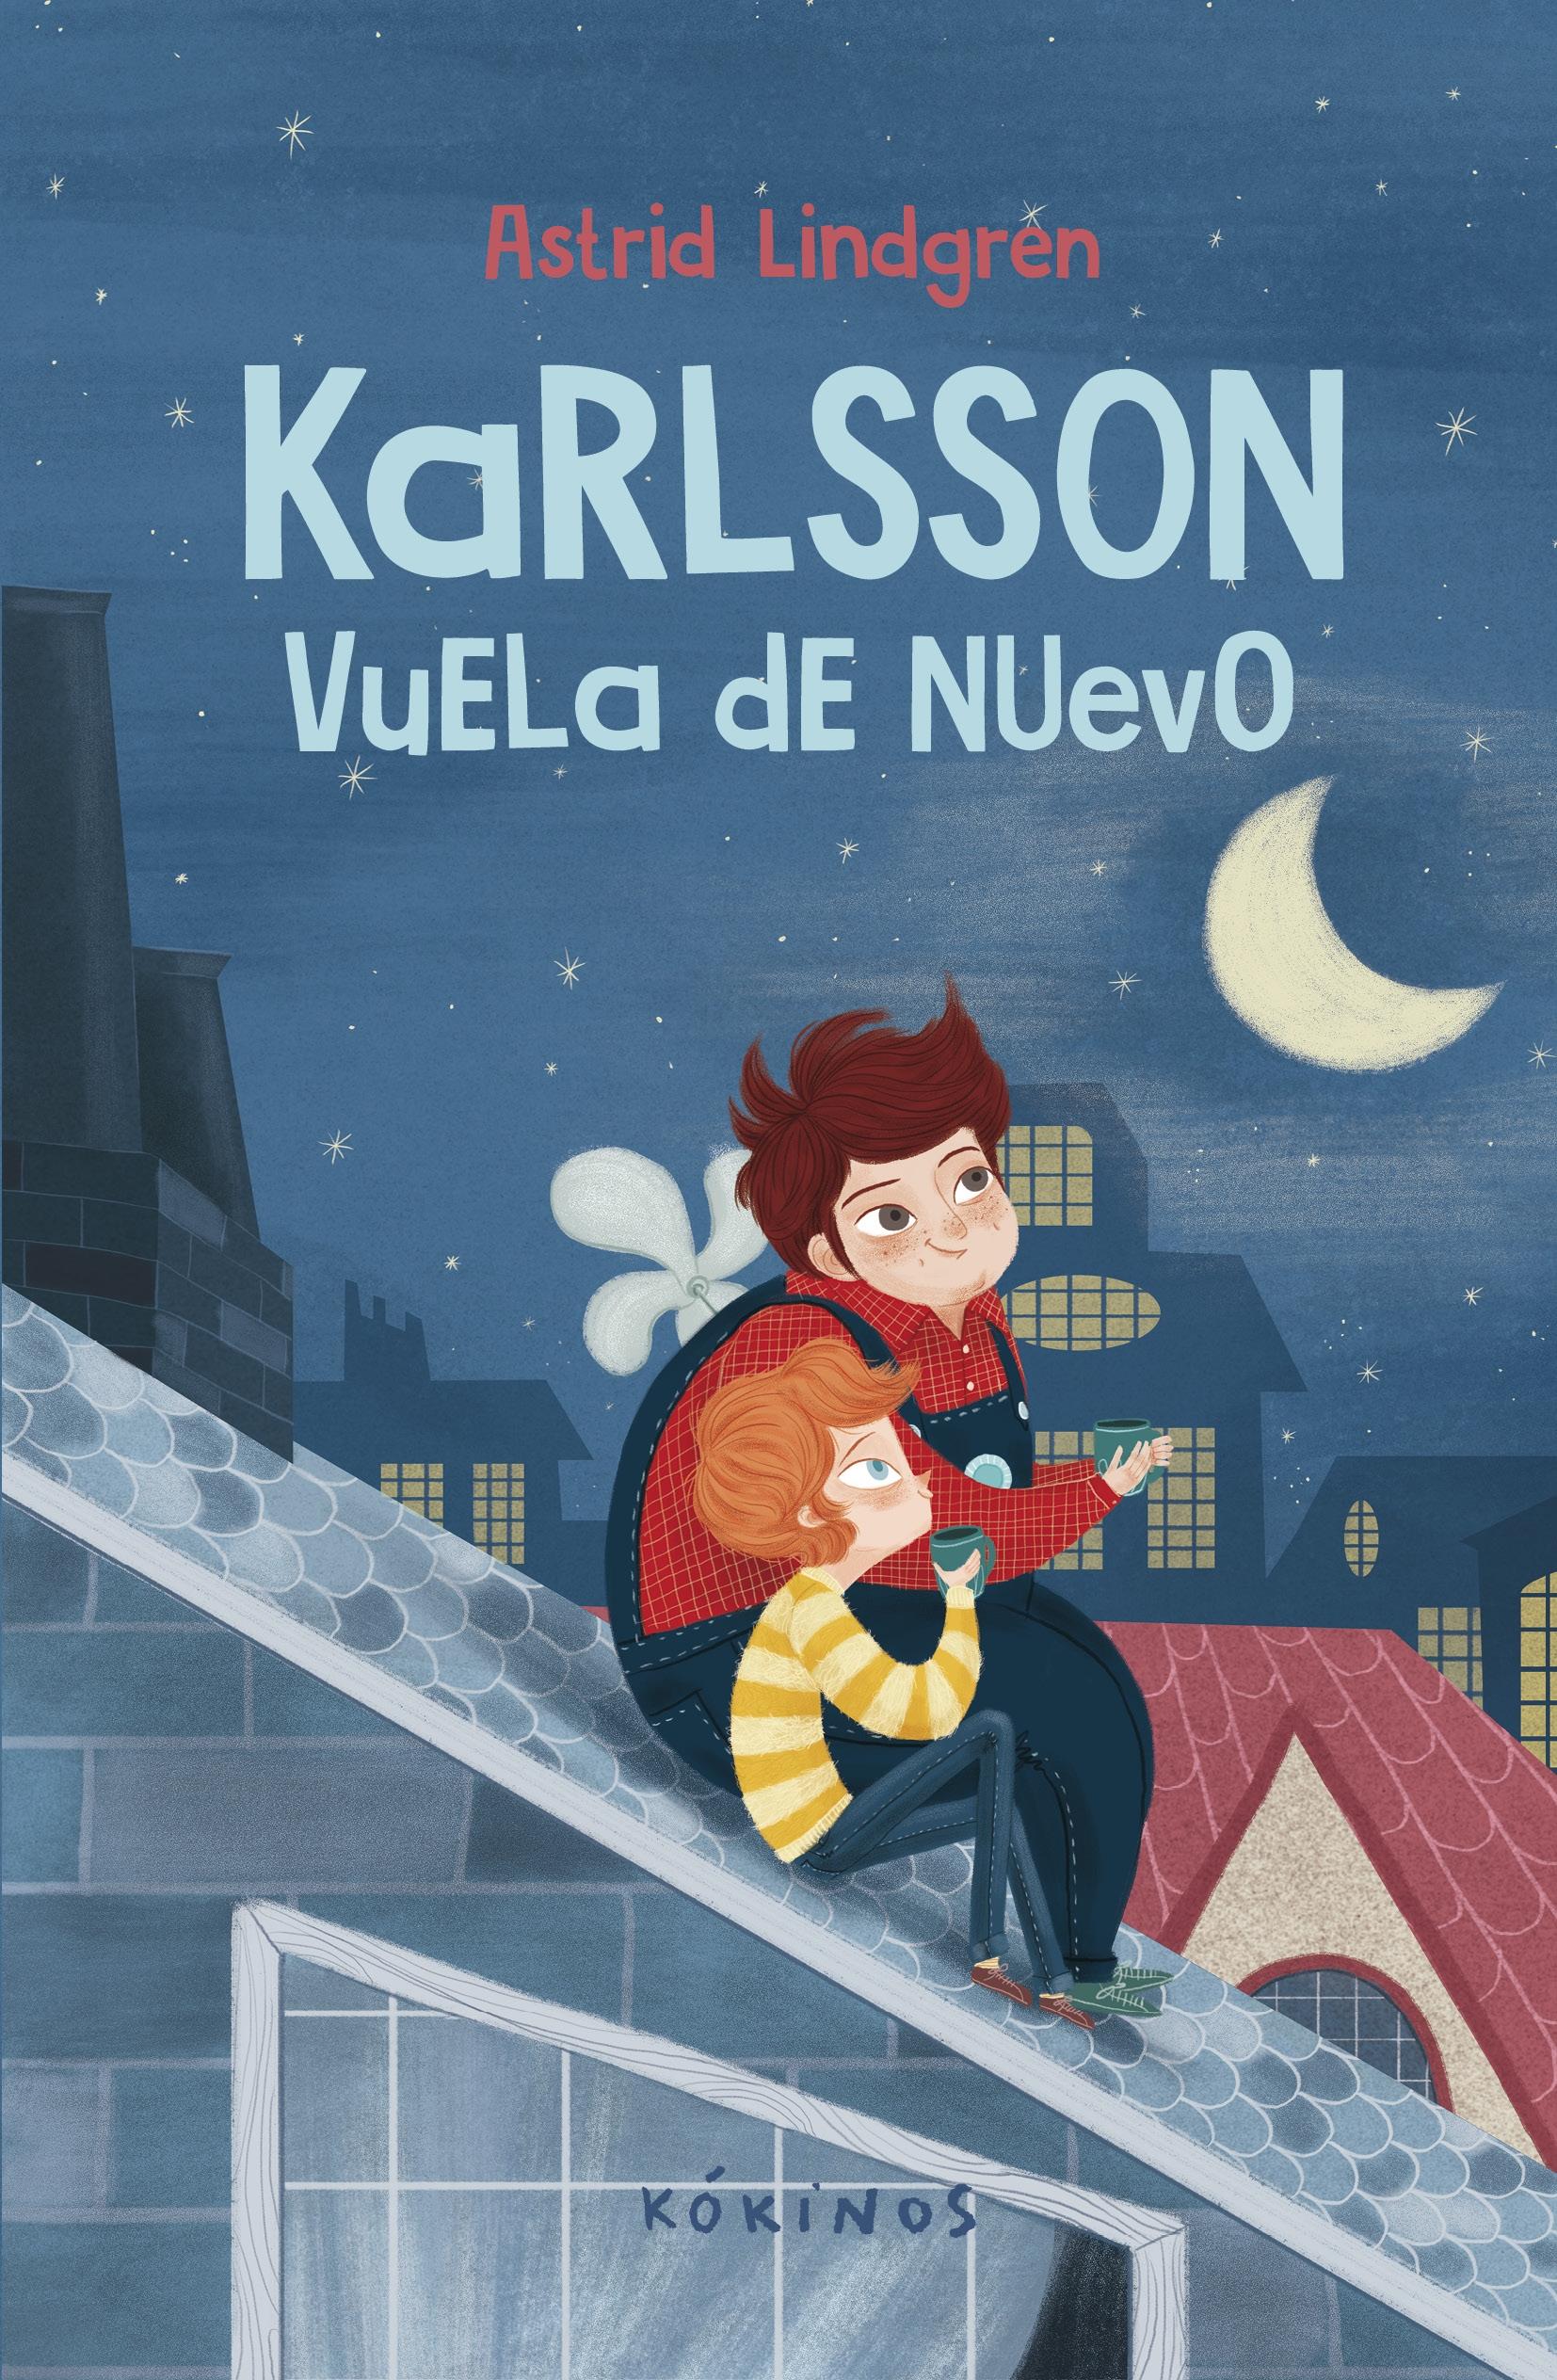 Karlsson Vuela de Nuevo. 